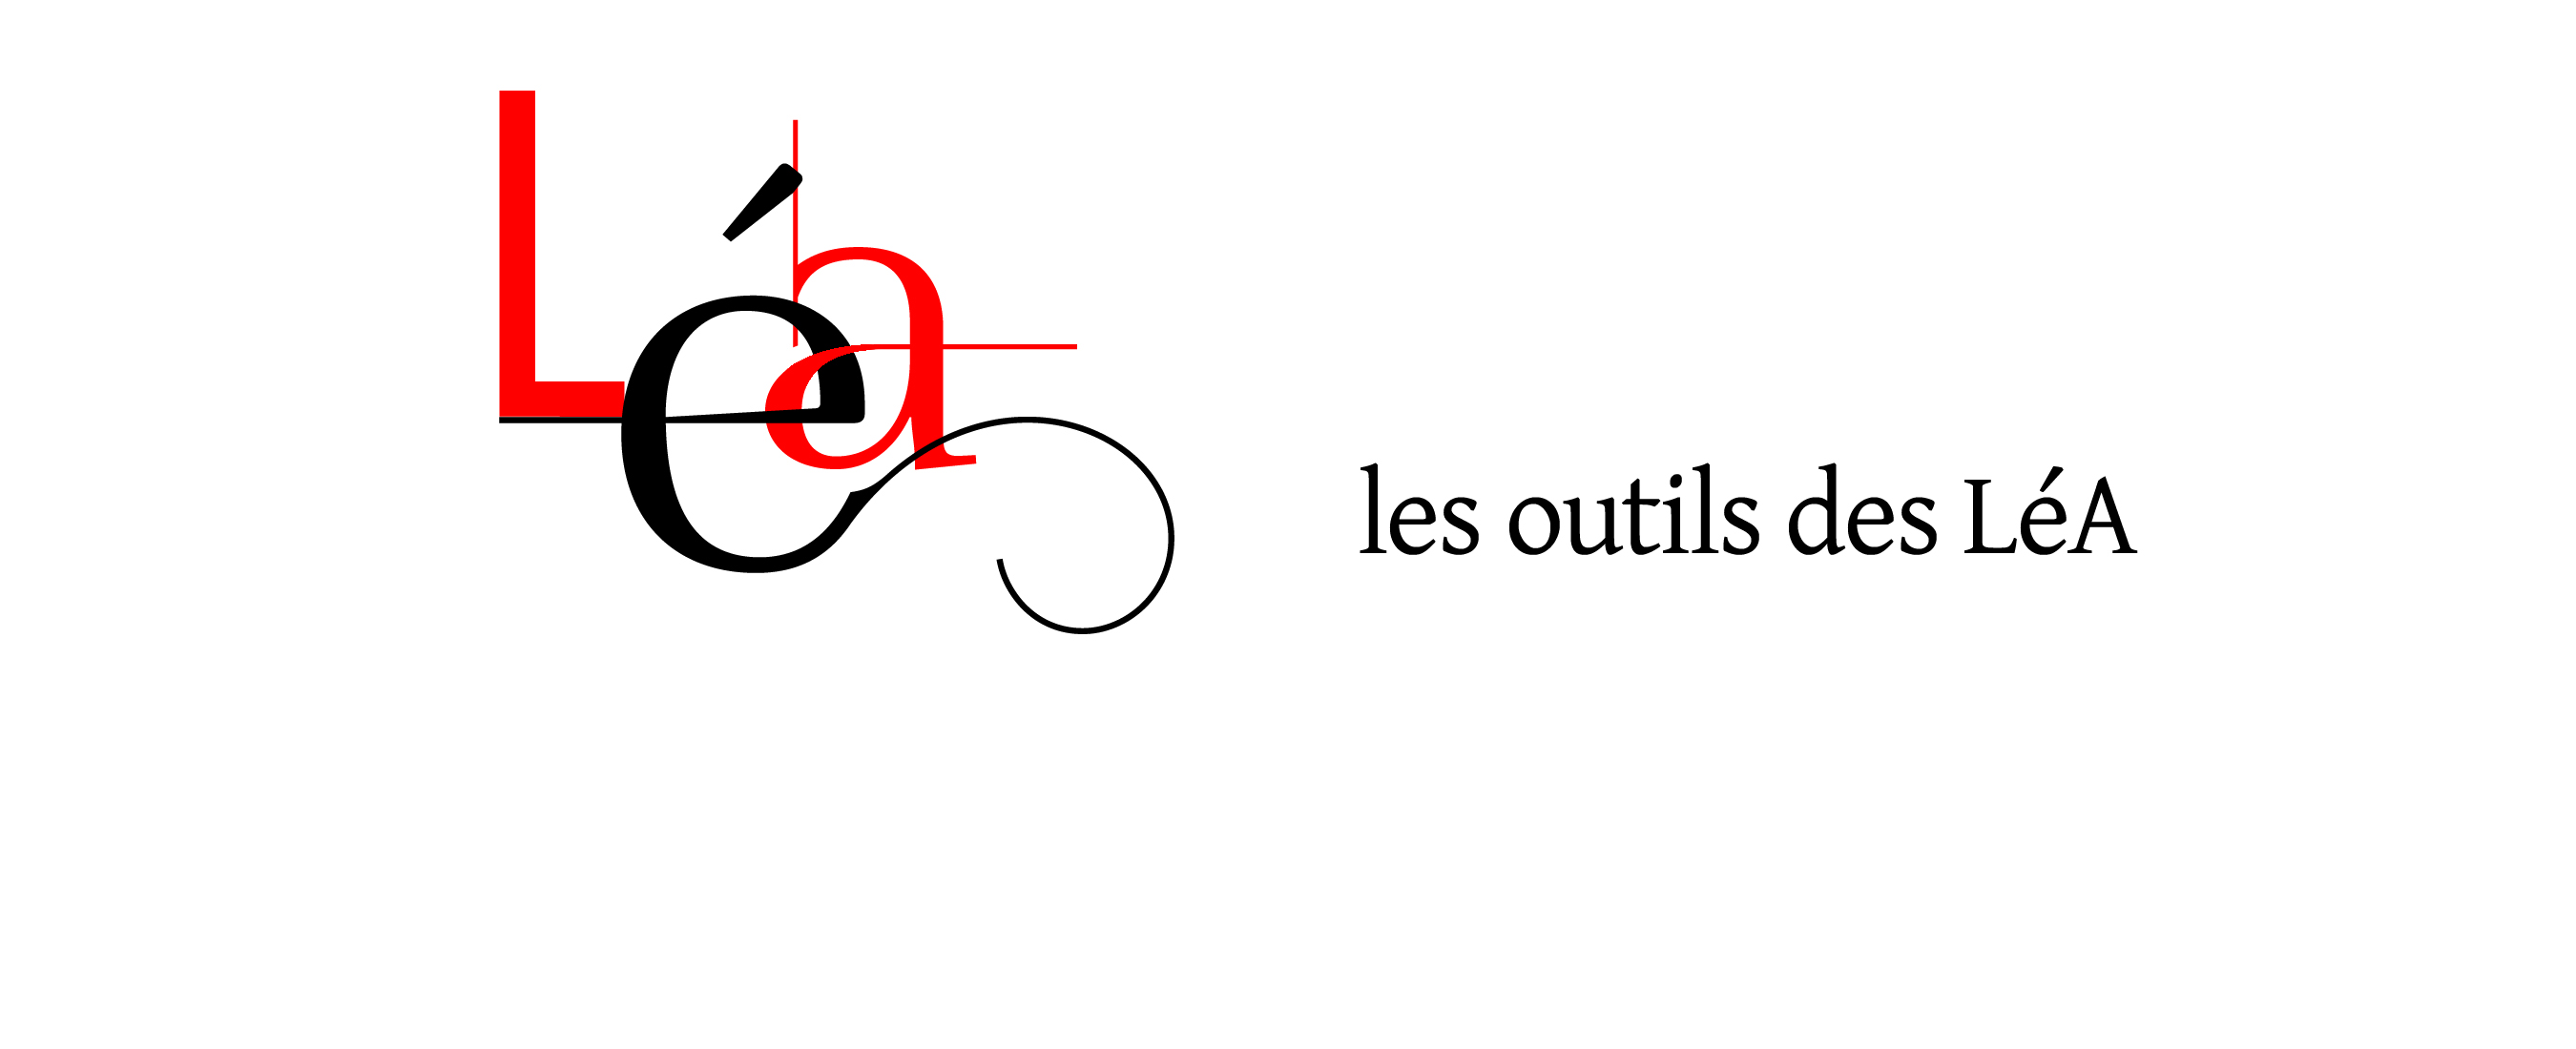 Accueil du Séminaire sur les outils des LéA: intervention de Michel Lussault